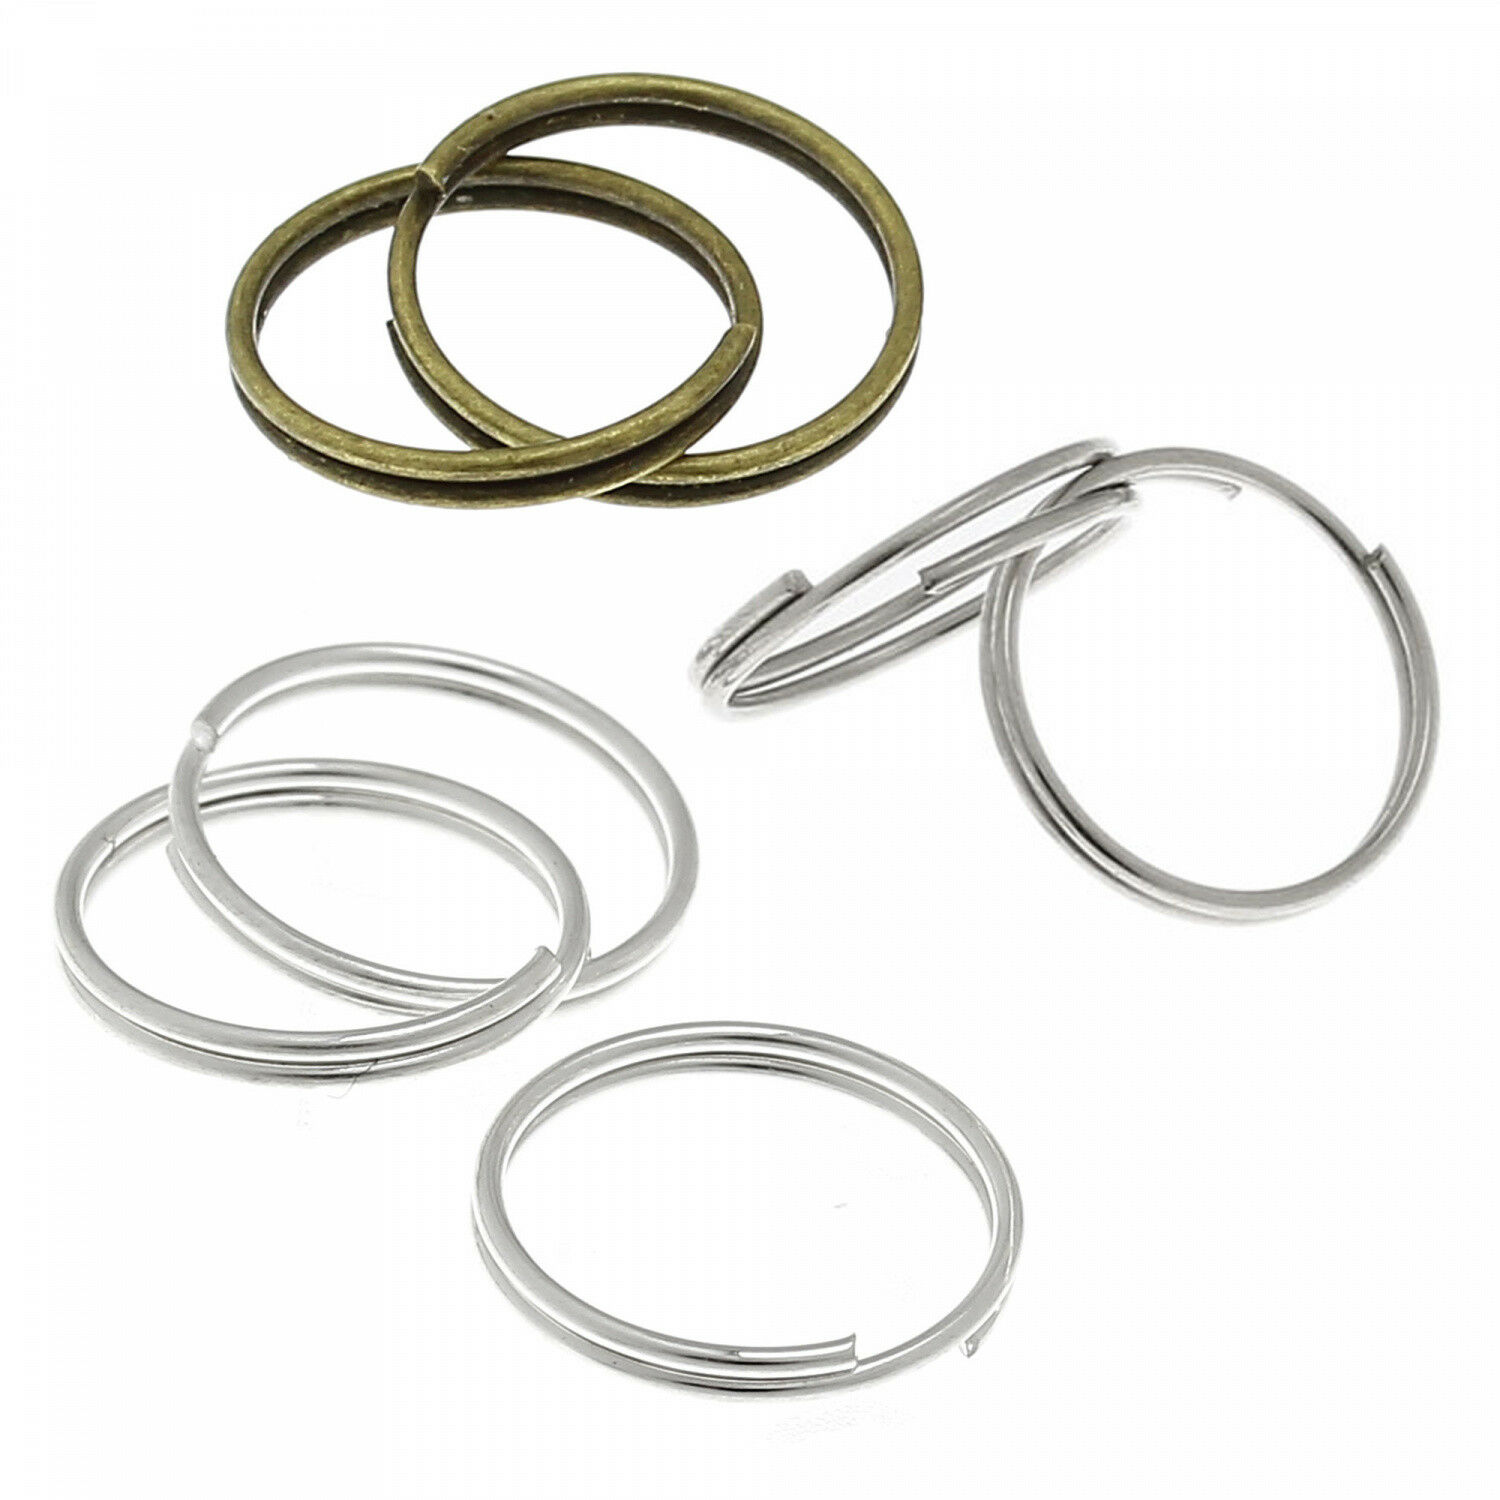 Metall Ringe 12mm Silber Spiralringe Spaltringe Ösen Verbinder Schlüsselring 